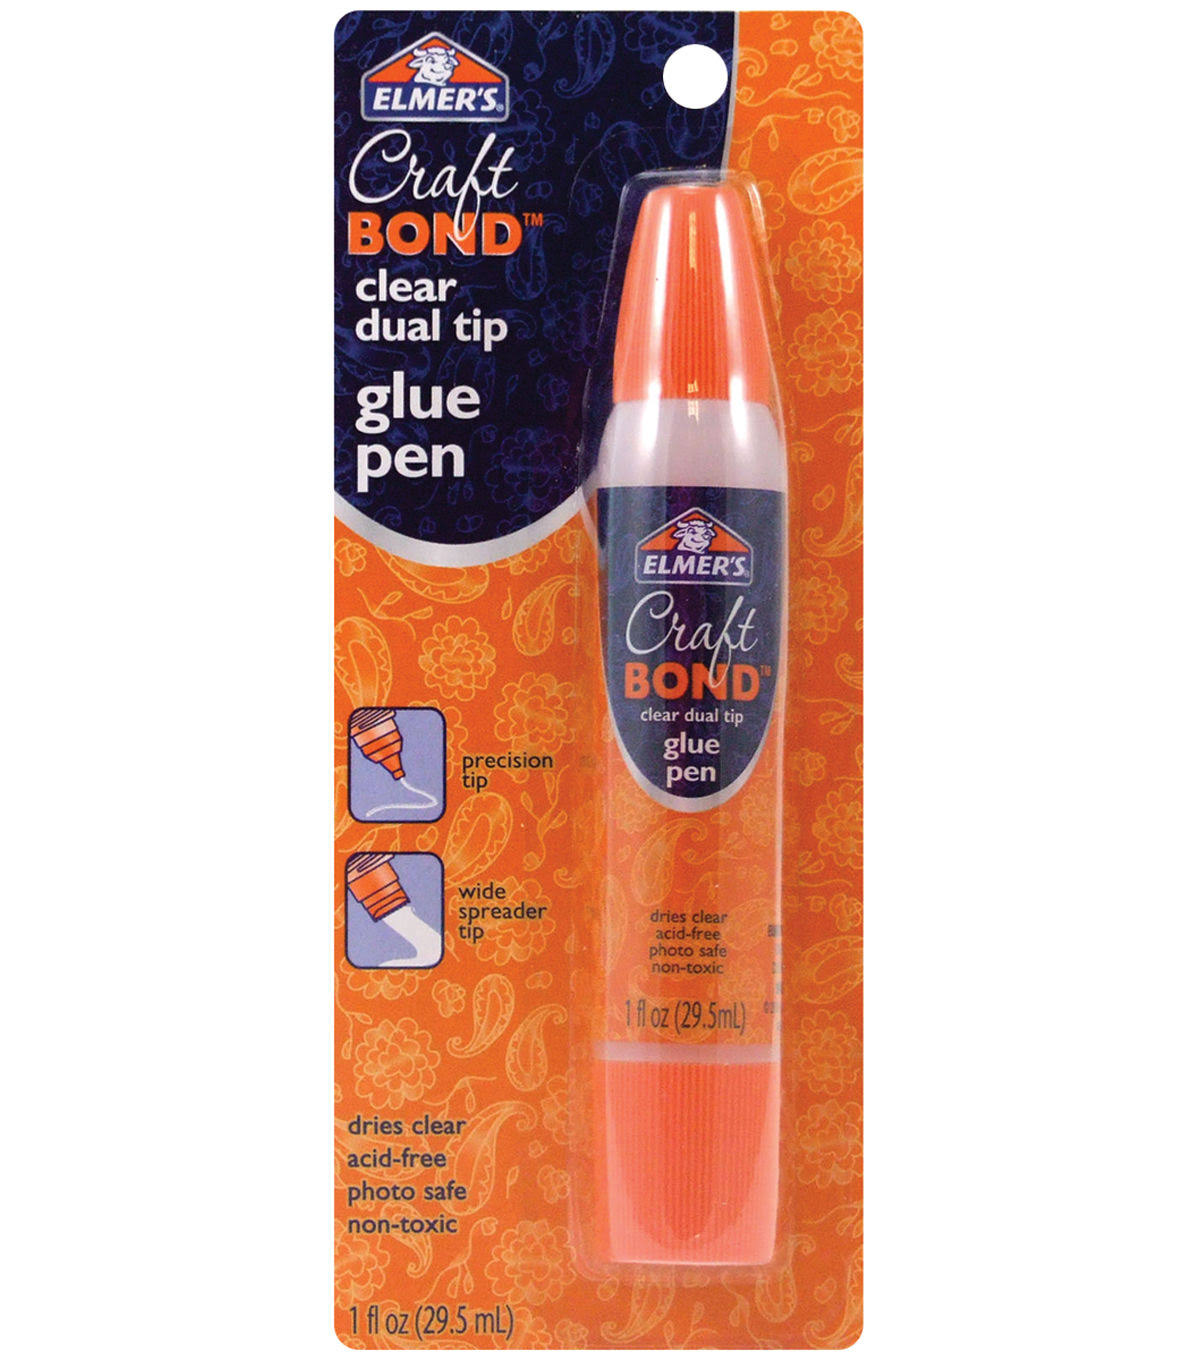 Elmer's Clear Dual Tip Glue Pen - 1 oz